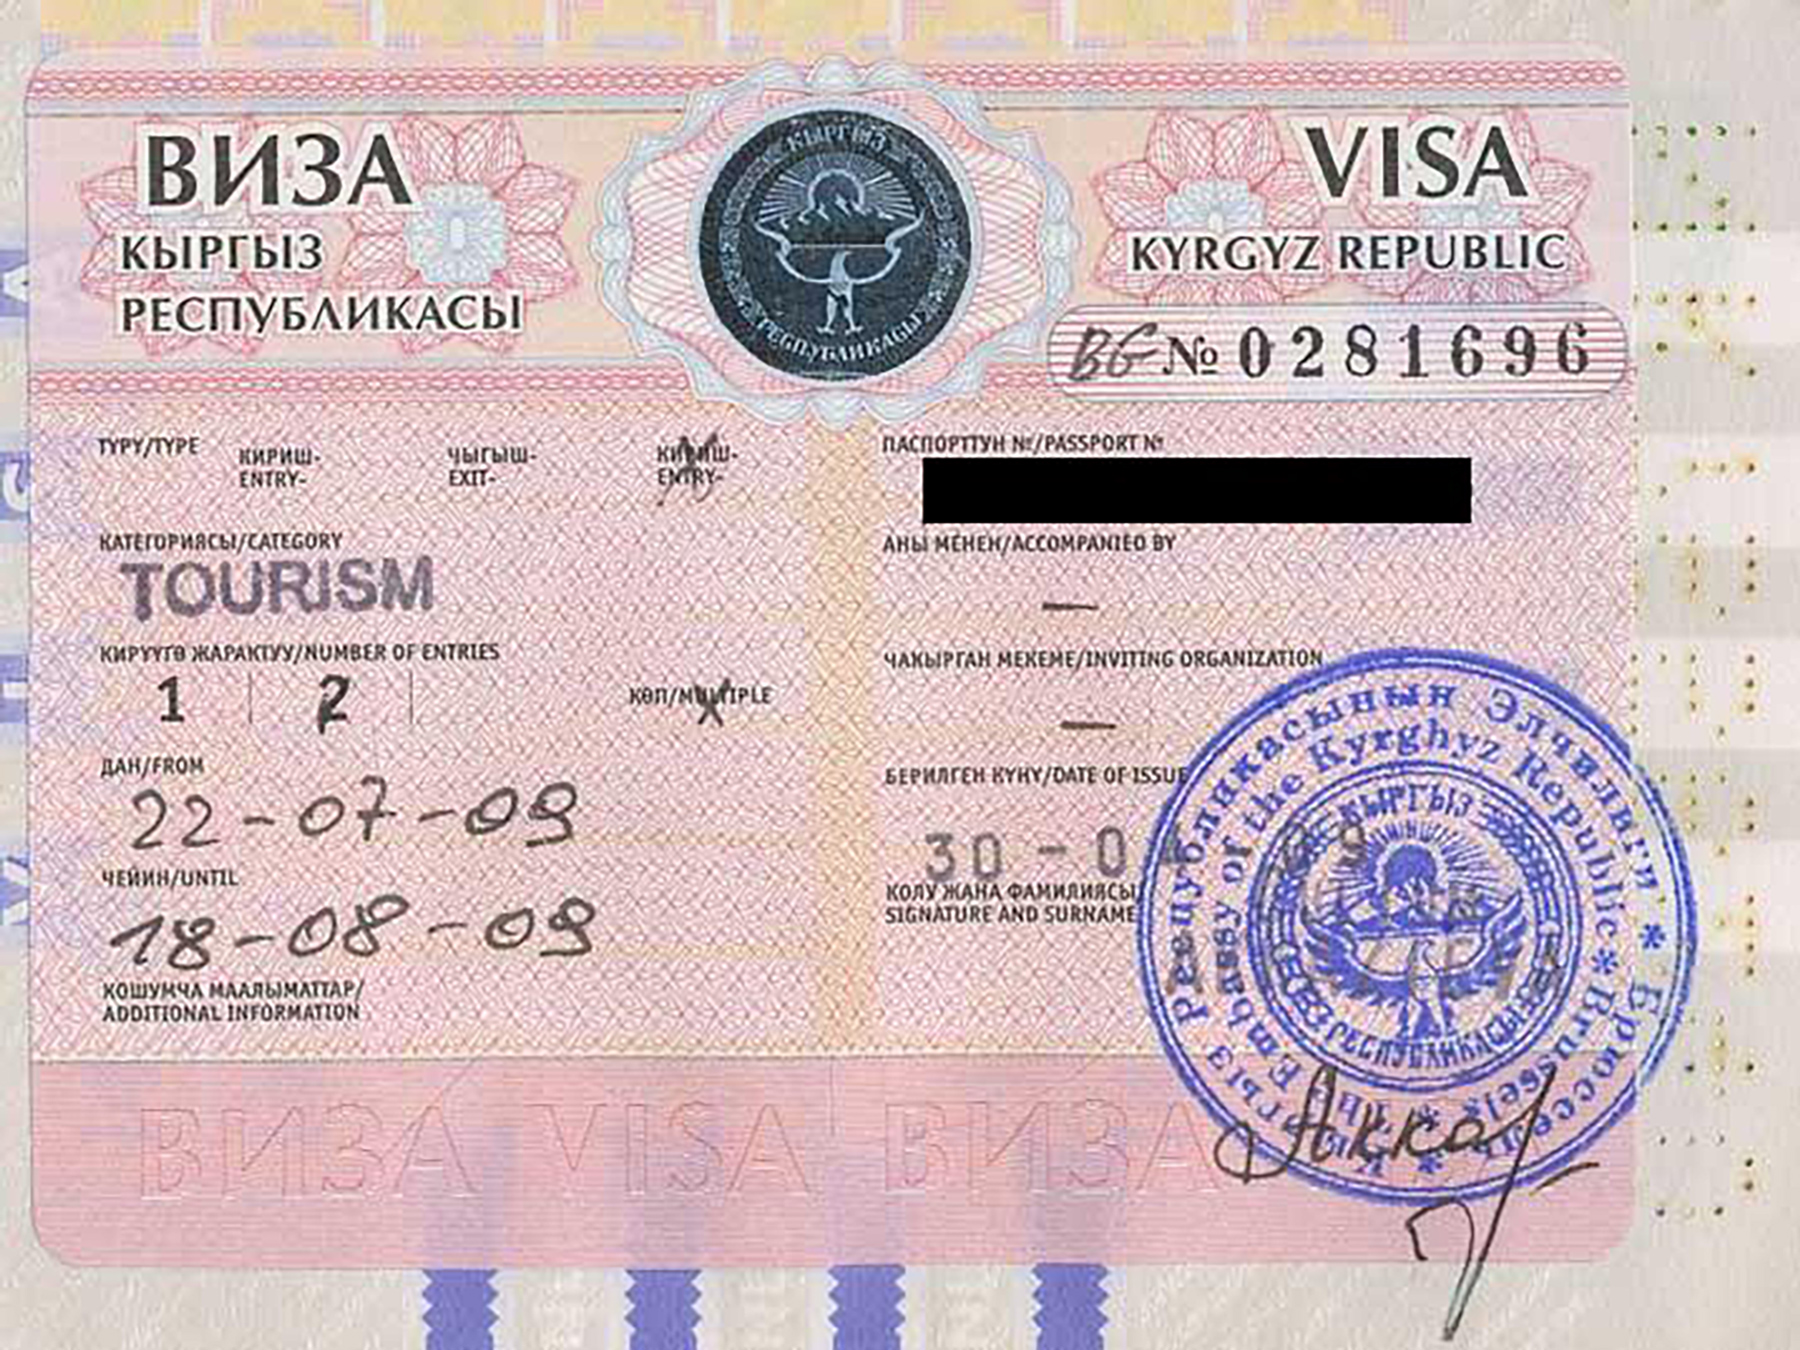 Нужна ли виза в черногорию для россиян?